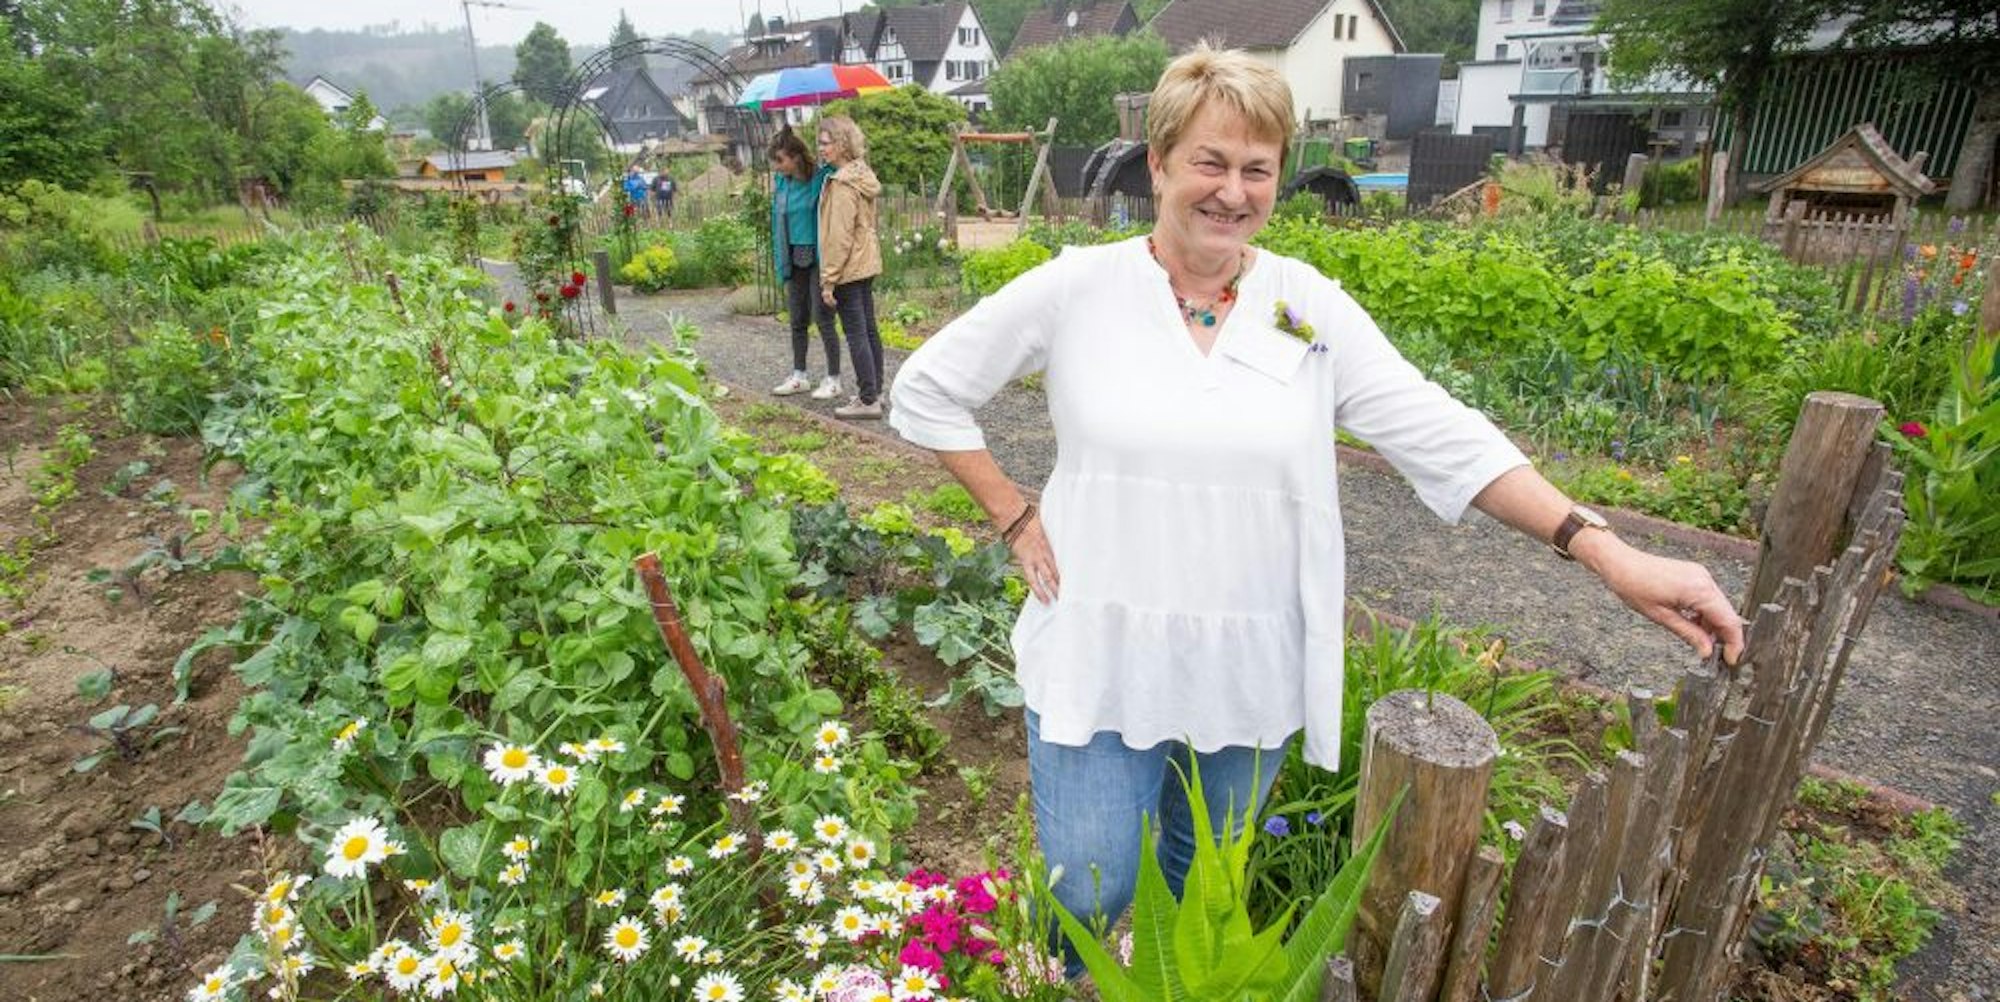 Auch die Eckenhagener dürfen sich im neuen Garten bedienen. Dr. Birgit Will hat diesen jetzt zur „Gartentour“ vorgestellt.